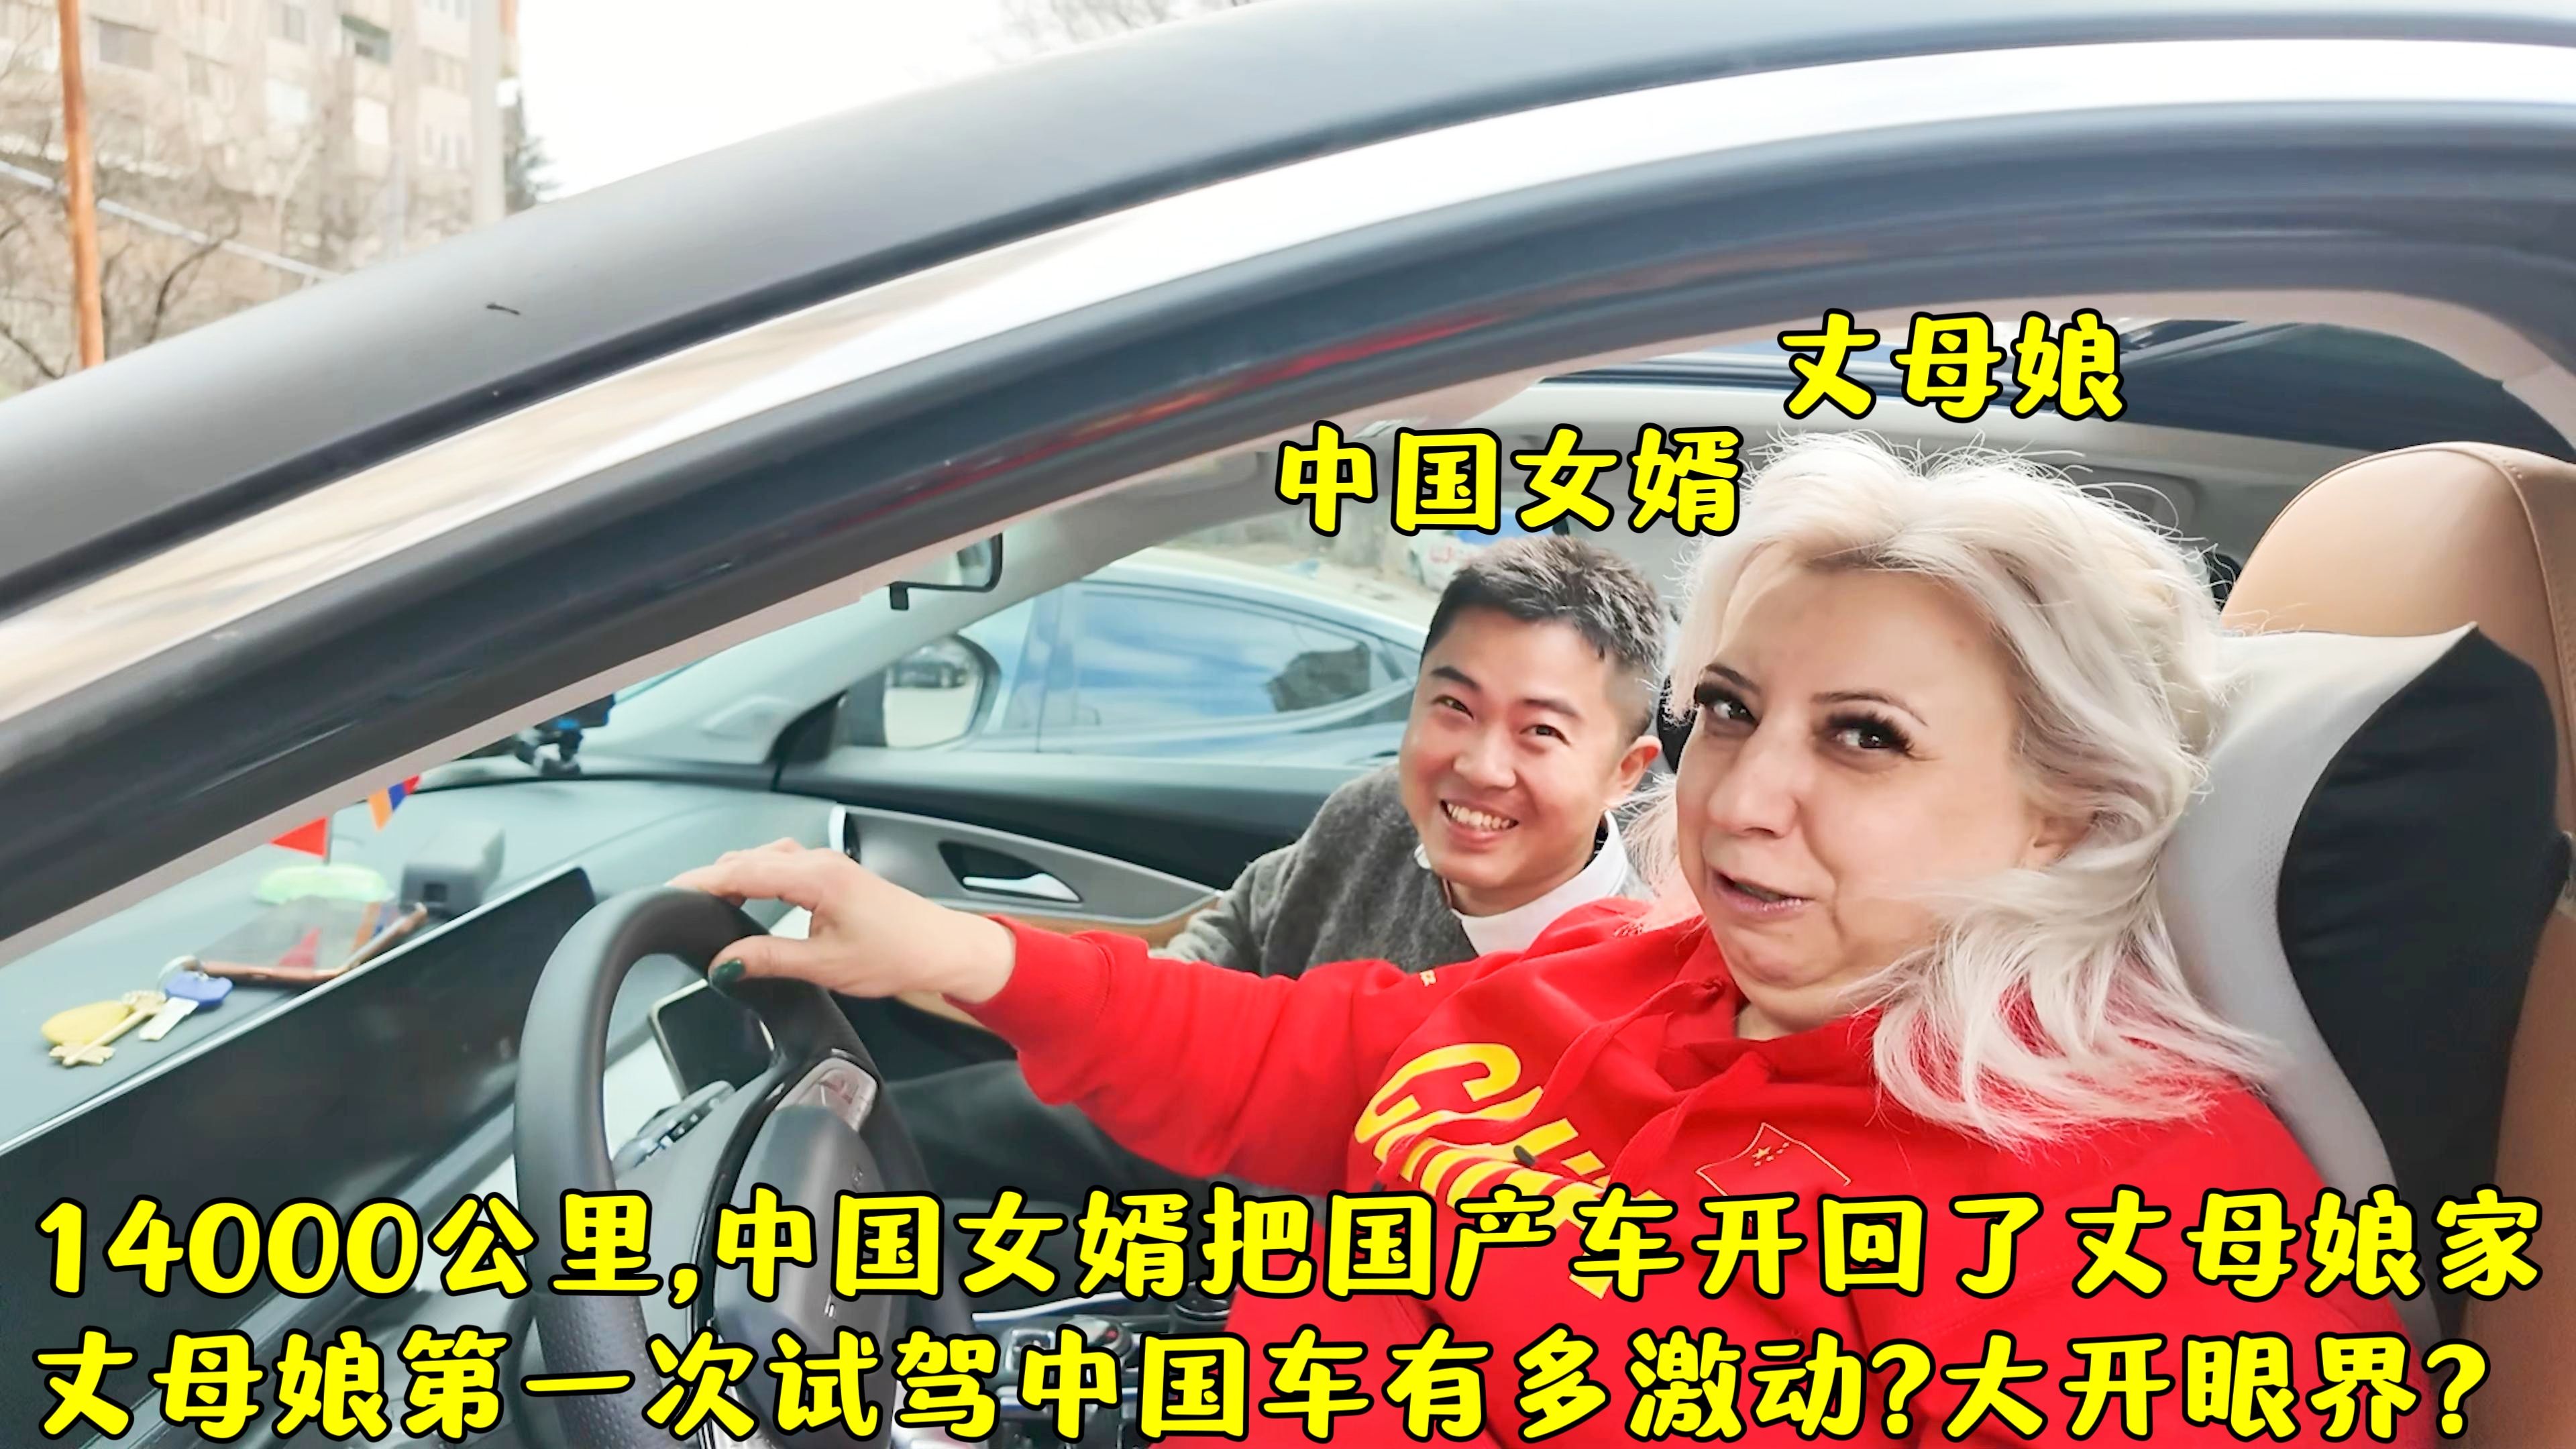 中国女婿终于把国产车开回丈母娘家,丈母娘试驾中国车有多兴奋?